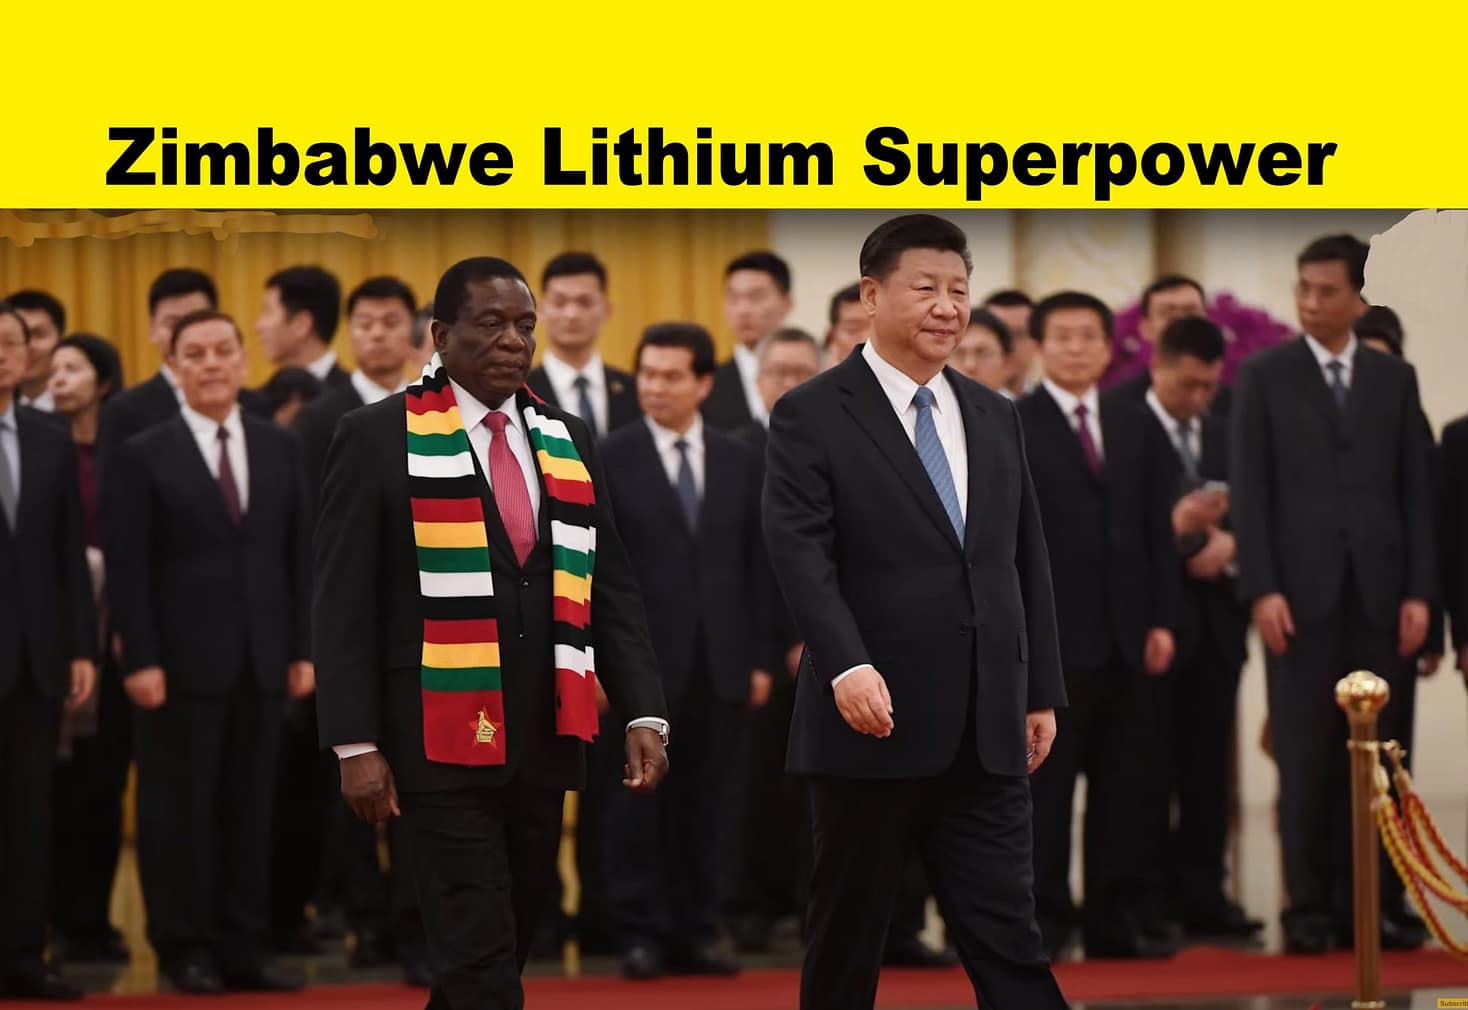 Zimbabwe Maybe Key to Solving Worldwide Lithium Shortage